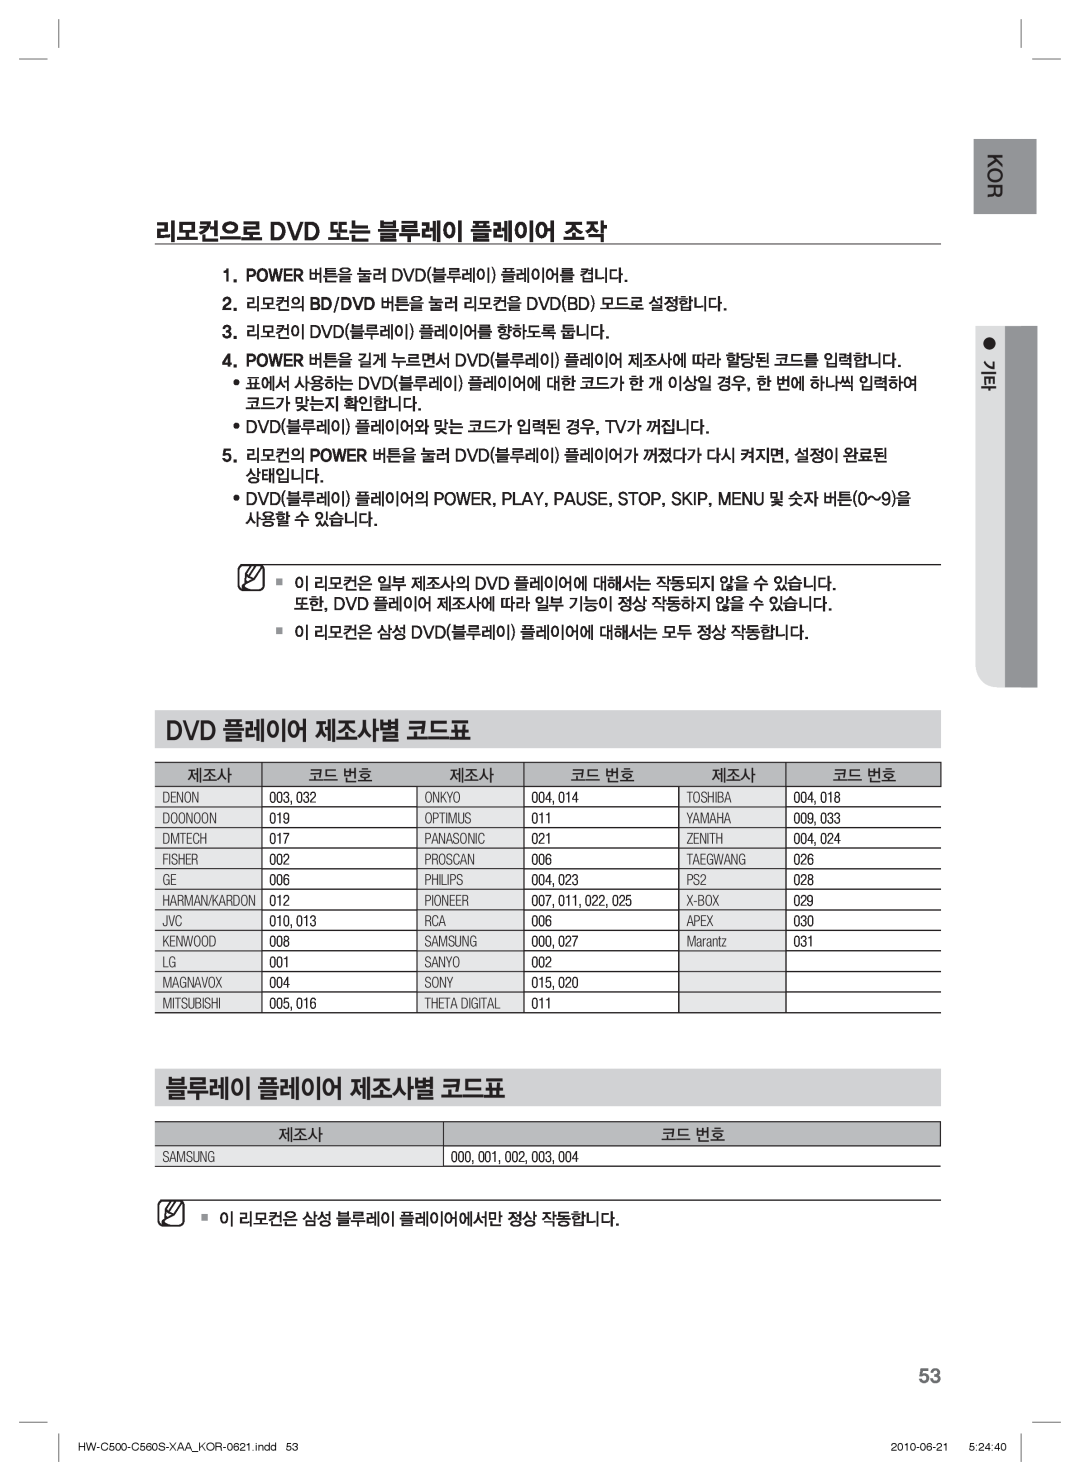 Samsung C560S manual Dvd 플레이어 제조사별 코드표, 블루레이 플레이어 제조사별 코드표, 리모컨으로 Dvd 또는 블루레이 플레이어 조작 